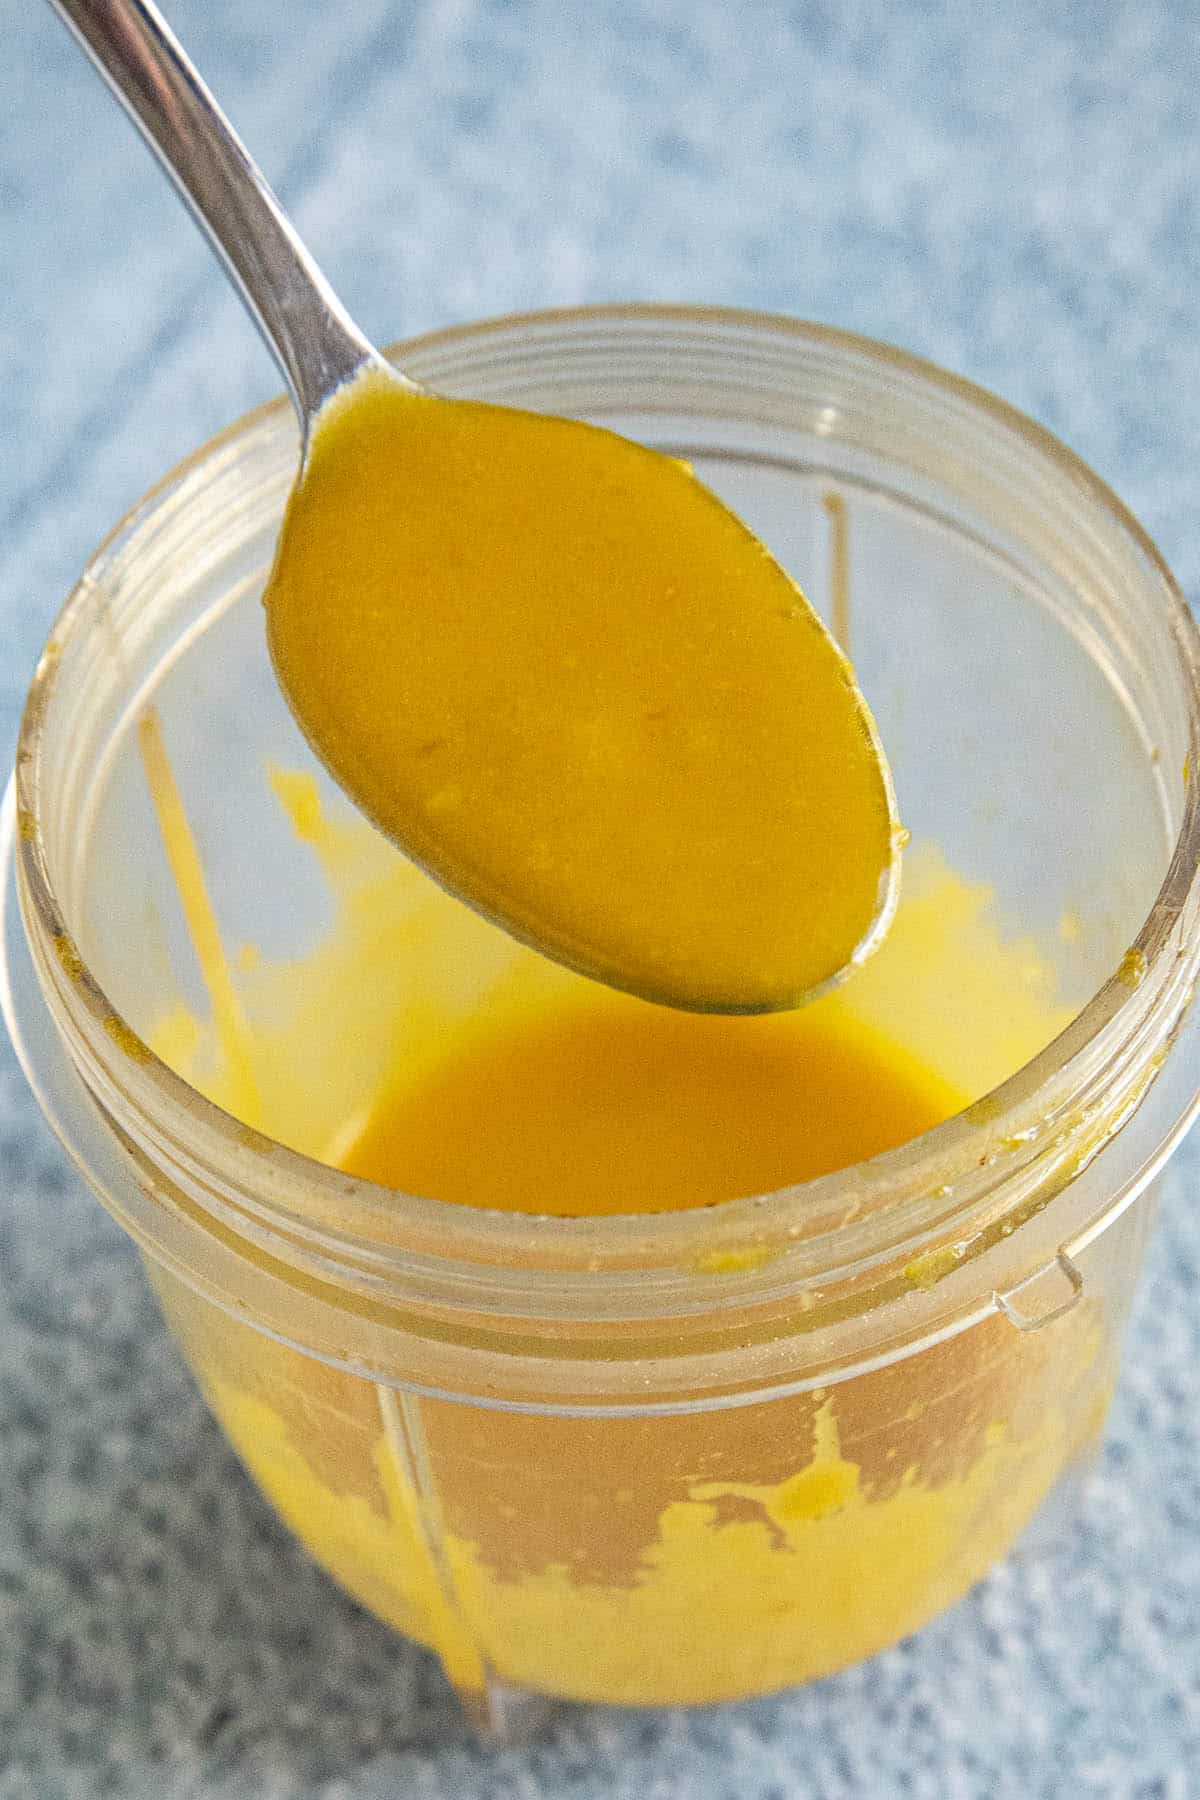 Aji amarillo sauce for tiradito